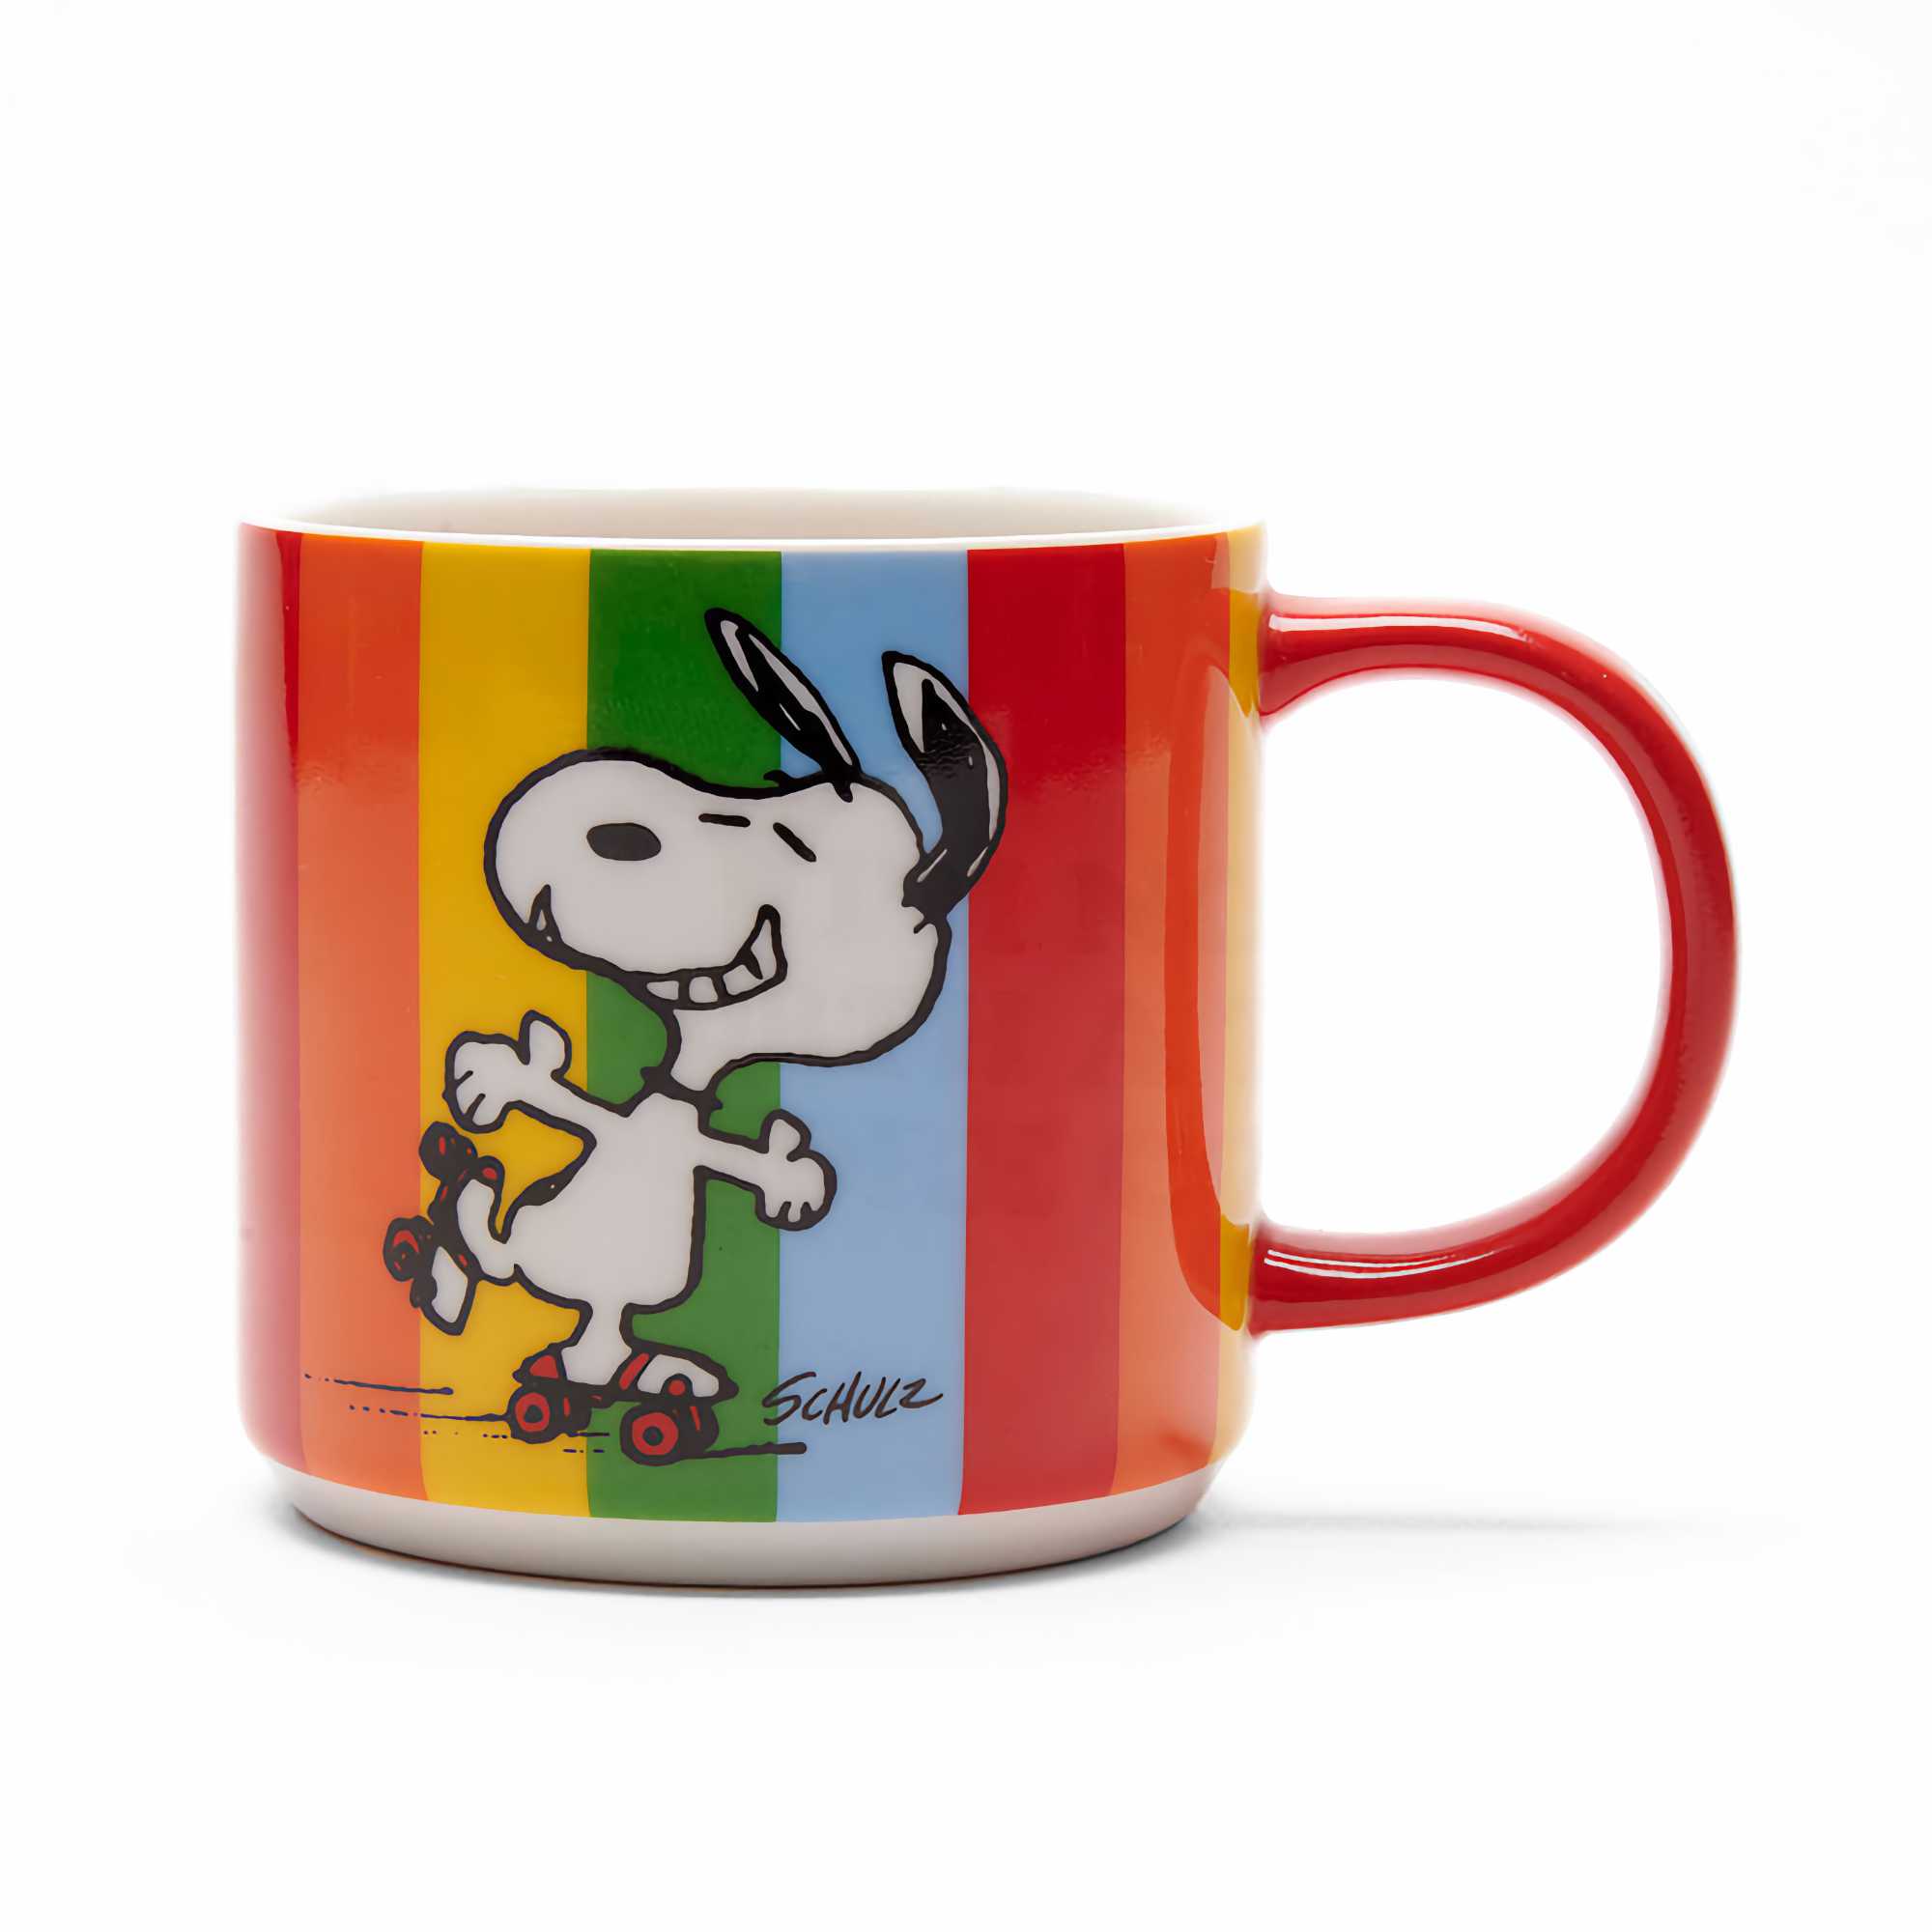 Peanuts + Magpie! mug, good times (330 ml)